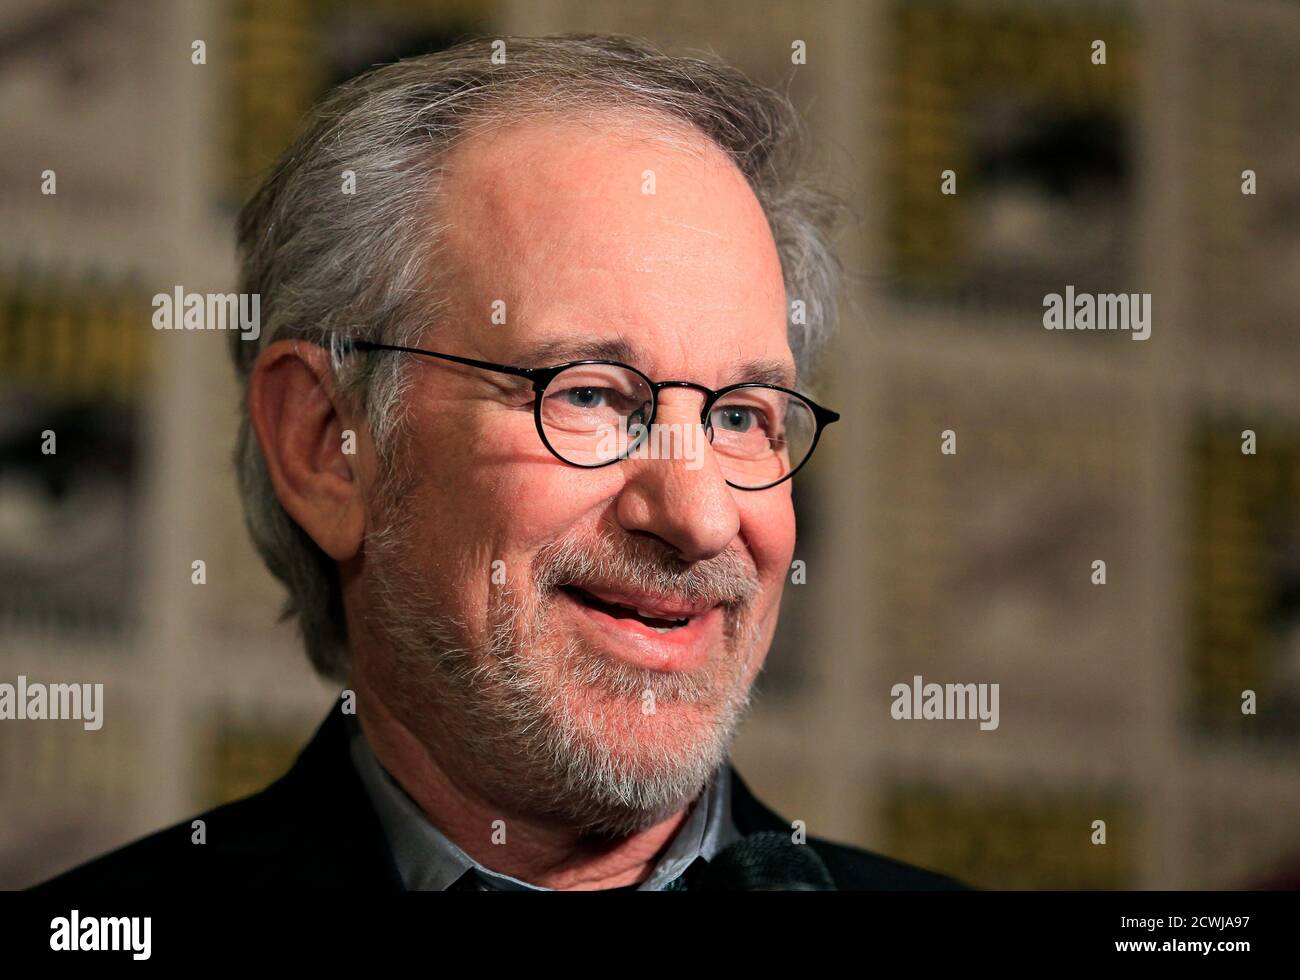 Le réalisateur Steven Spielberg fait sa première apparition à Comic con pour promouvoir son prochain film « The Adventures of Tin » lors de l'événement culturel pop à San Diego, Californie, le 22 juillet 2011. REUTERS/Mike Blake (ETATS-UNIS - Tags: PROFIL DE LA SOCIÉTÉ DE DIVERTISSEMENT) Banque D'Images